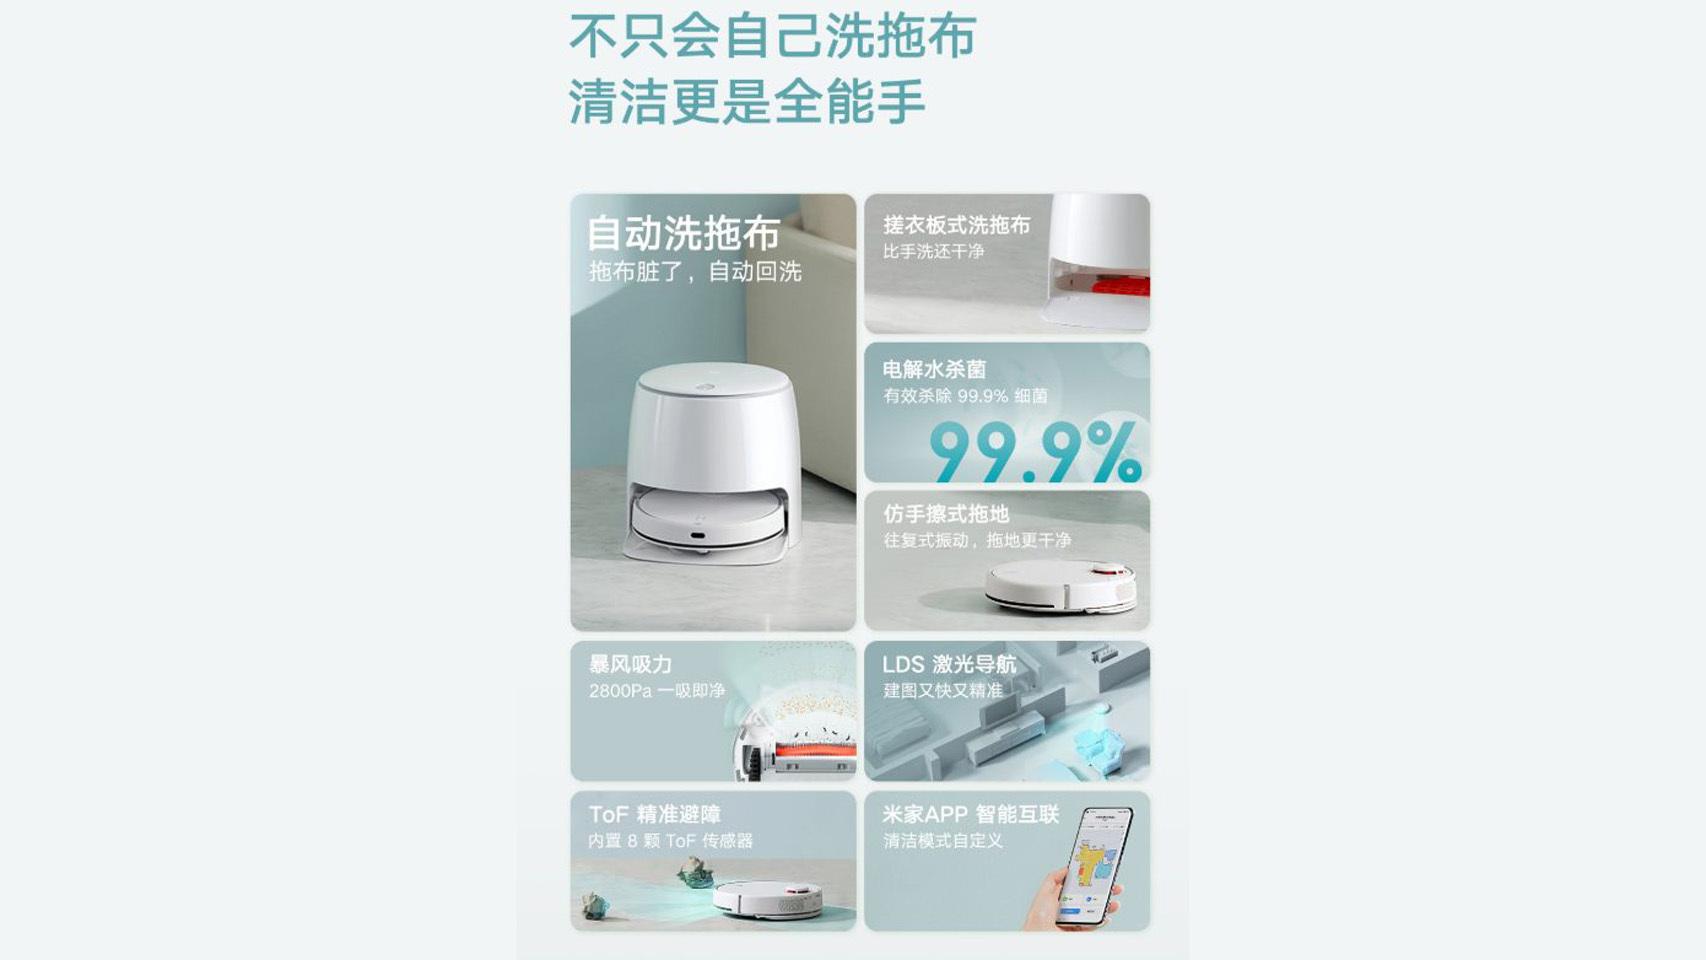 Xiaomi lanza el Mi Robot LDS, su nuevo aspirador inteligente barato